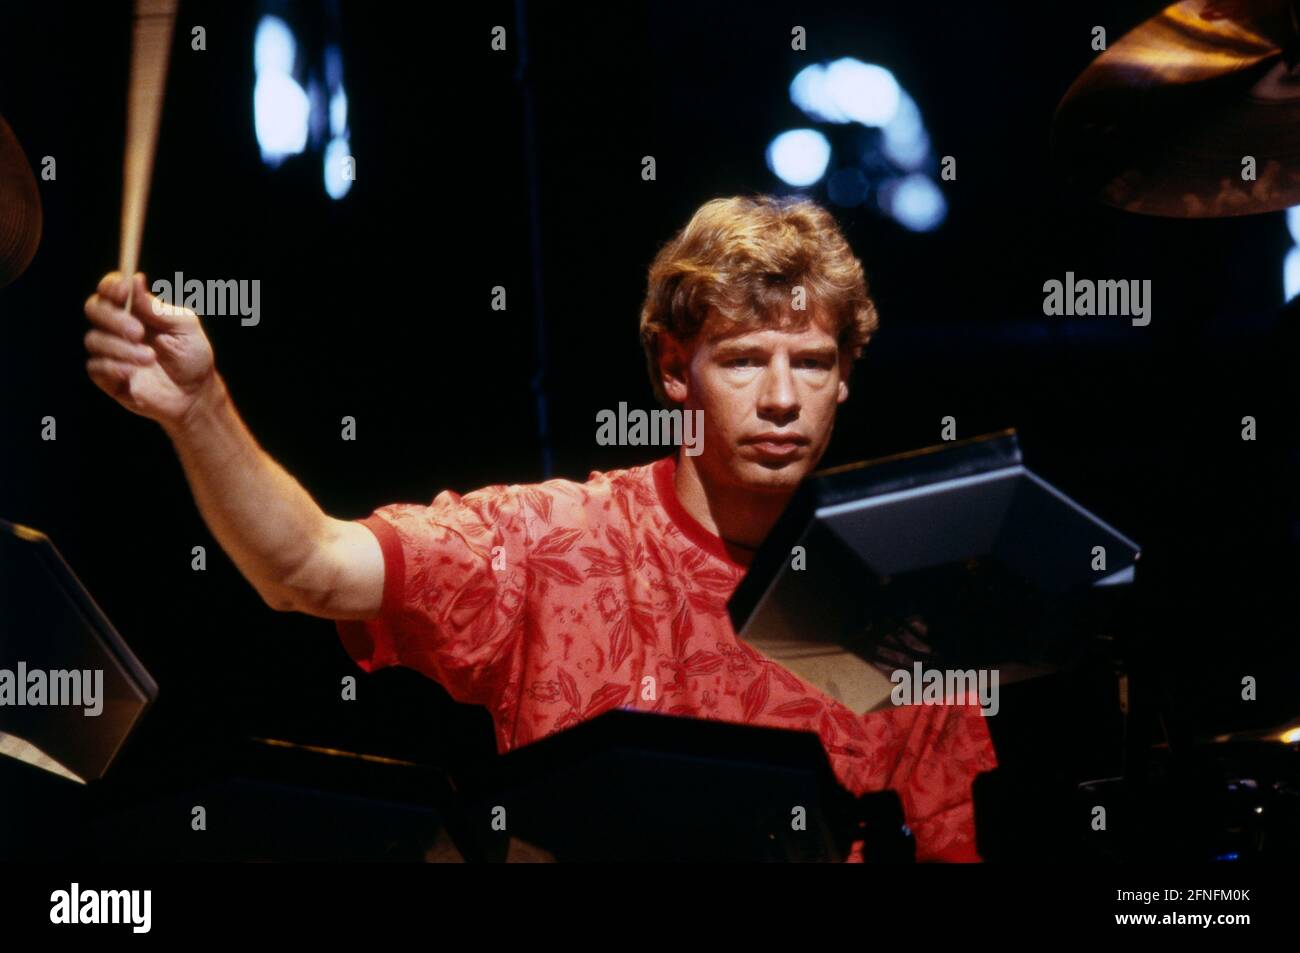 Bill Bruford, britischer Schlagzeuger, bei einem Auftritt, 1990. Bill Bruford, British drummer, during a performance, 1990. Stock Photo